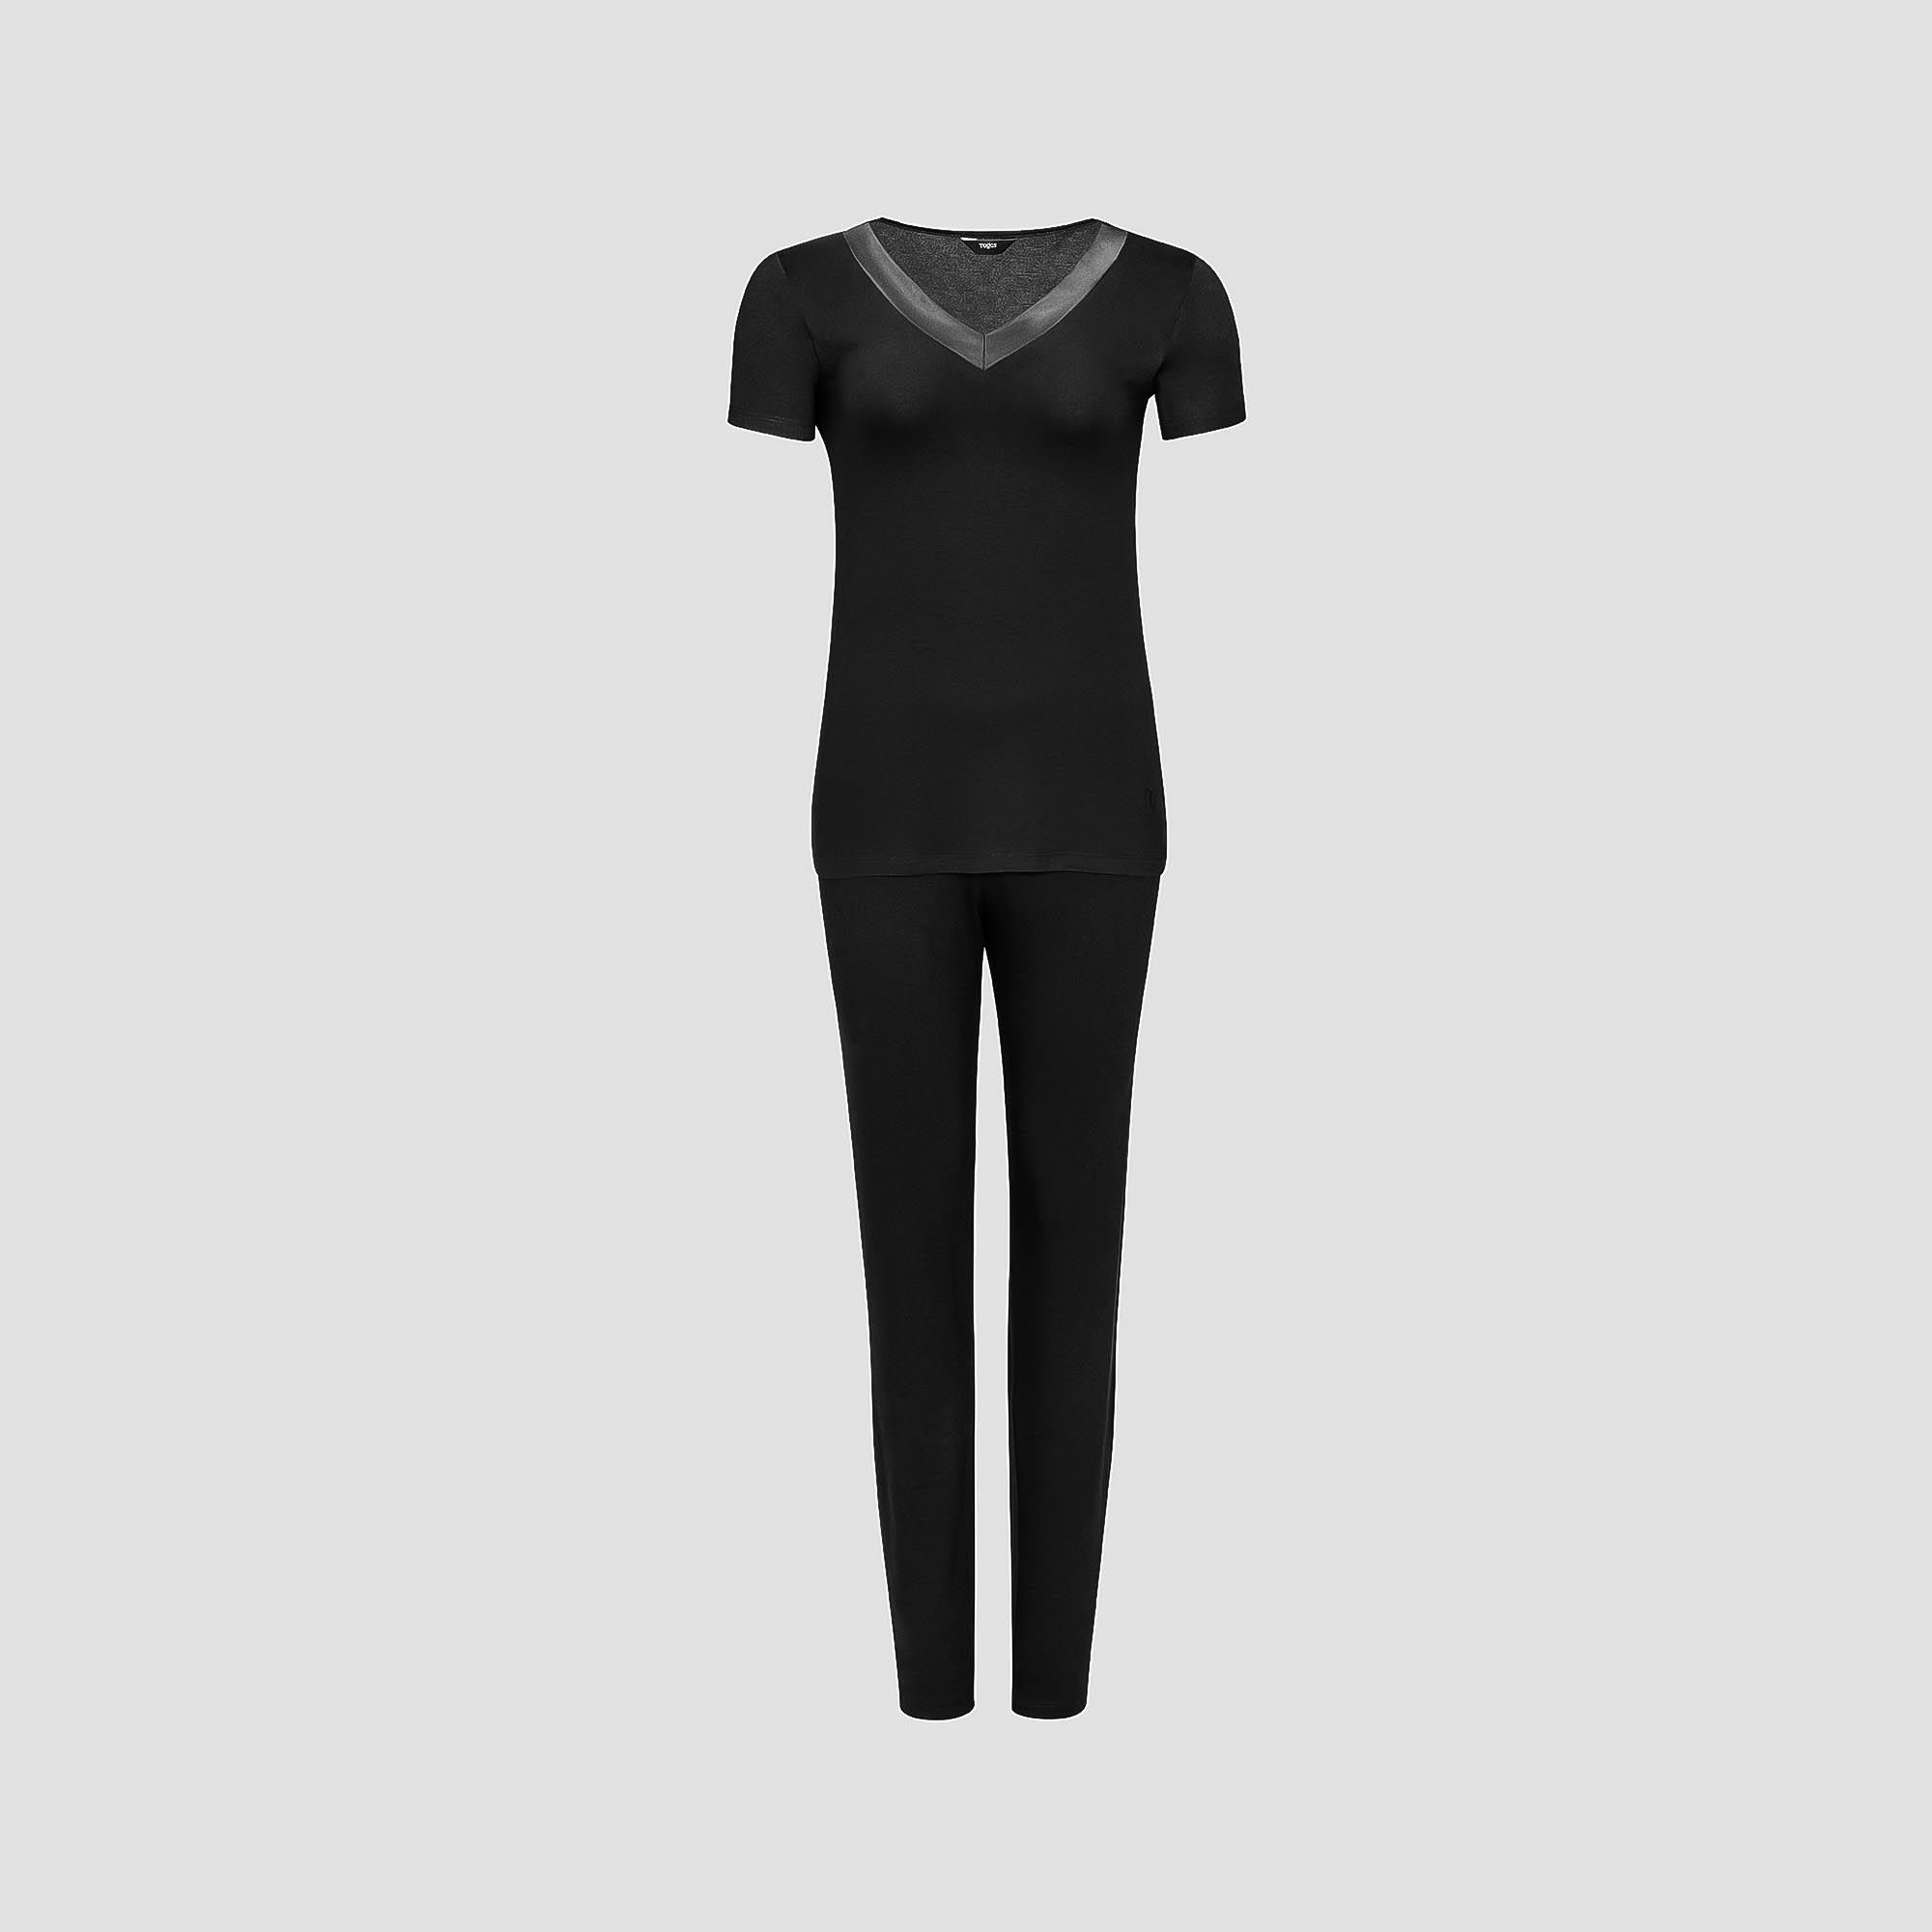 Пижама Togas Ингелла черная женская S(44) 2 предмета